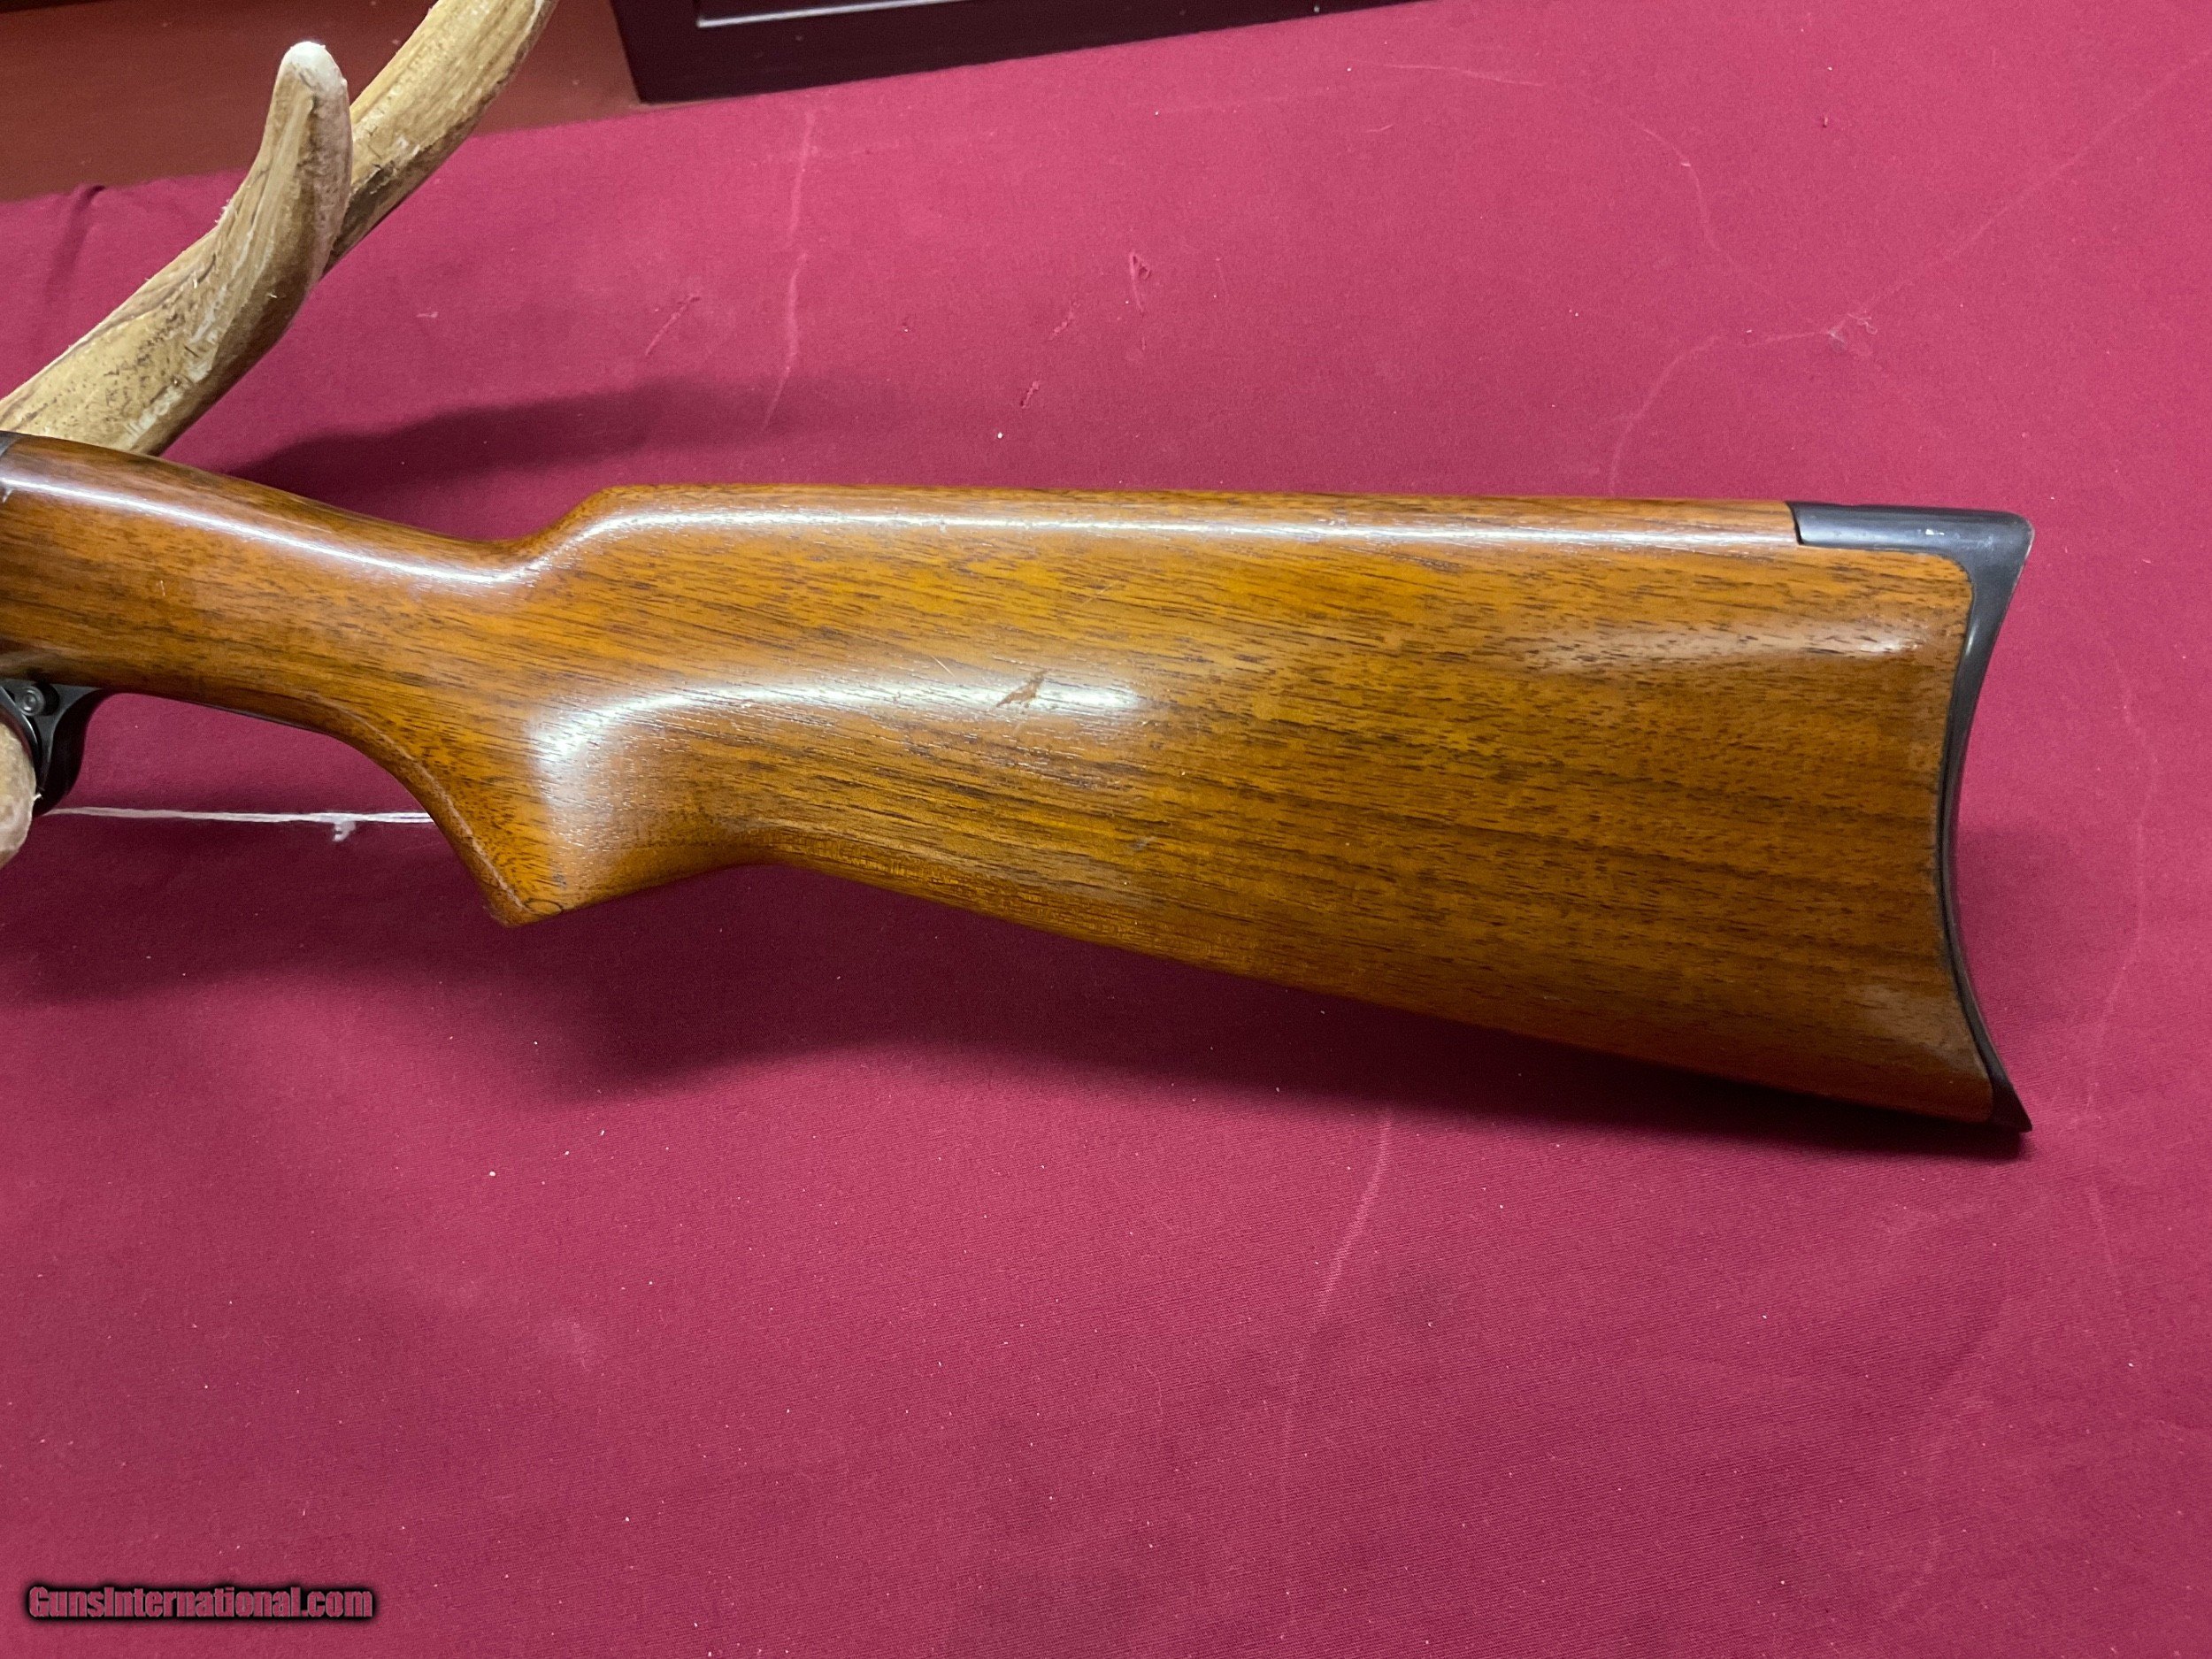 remington model 12 serial number 777499